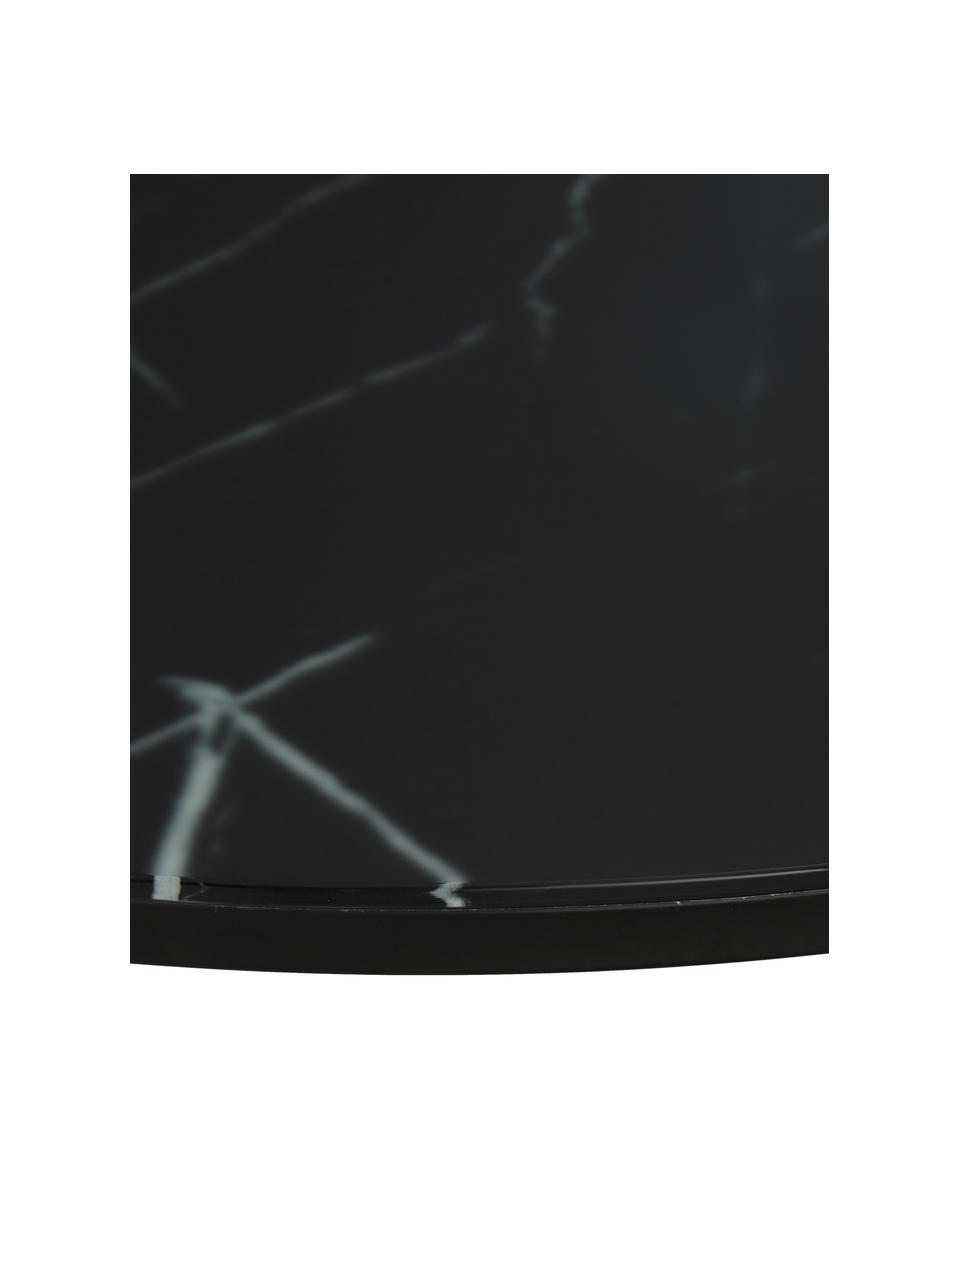 Stolik kawowy ze szklanym blatem o wyglądzie marmuru Antigua, Blat: szkło, matowy nadruk, Stelaż: stal malowana proszkowo, Czarny, marmurowy, Ø 80 x W 45 cm